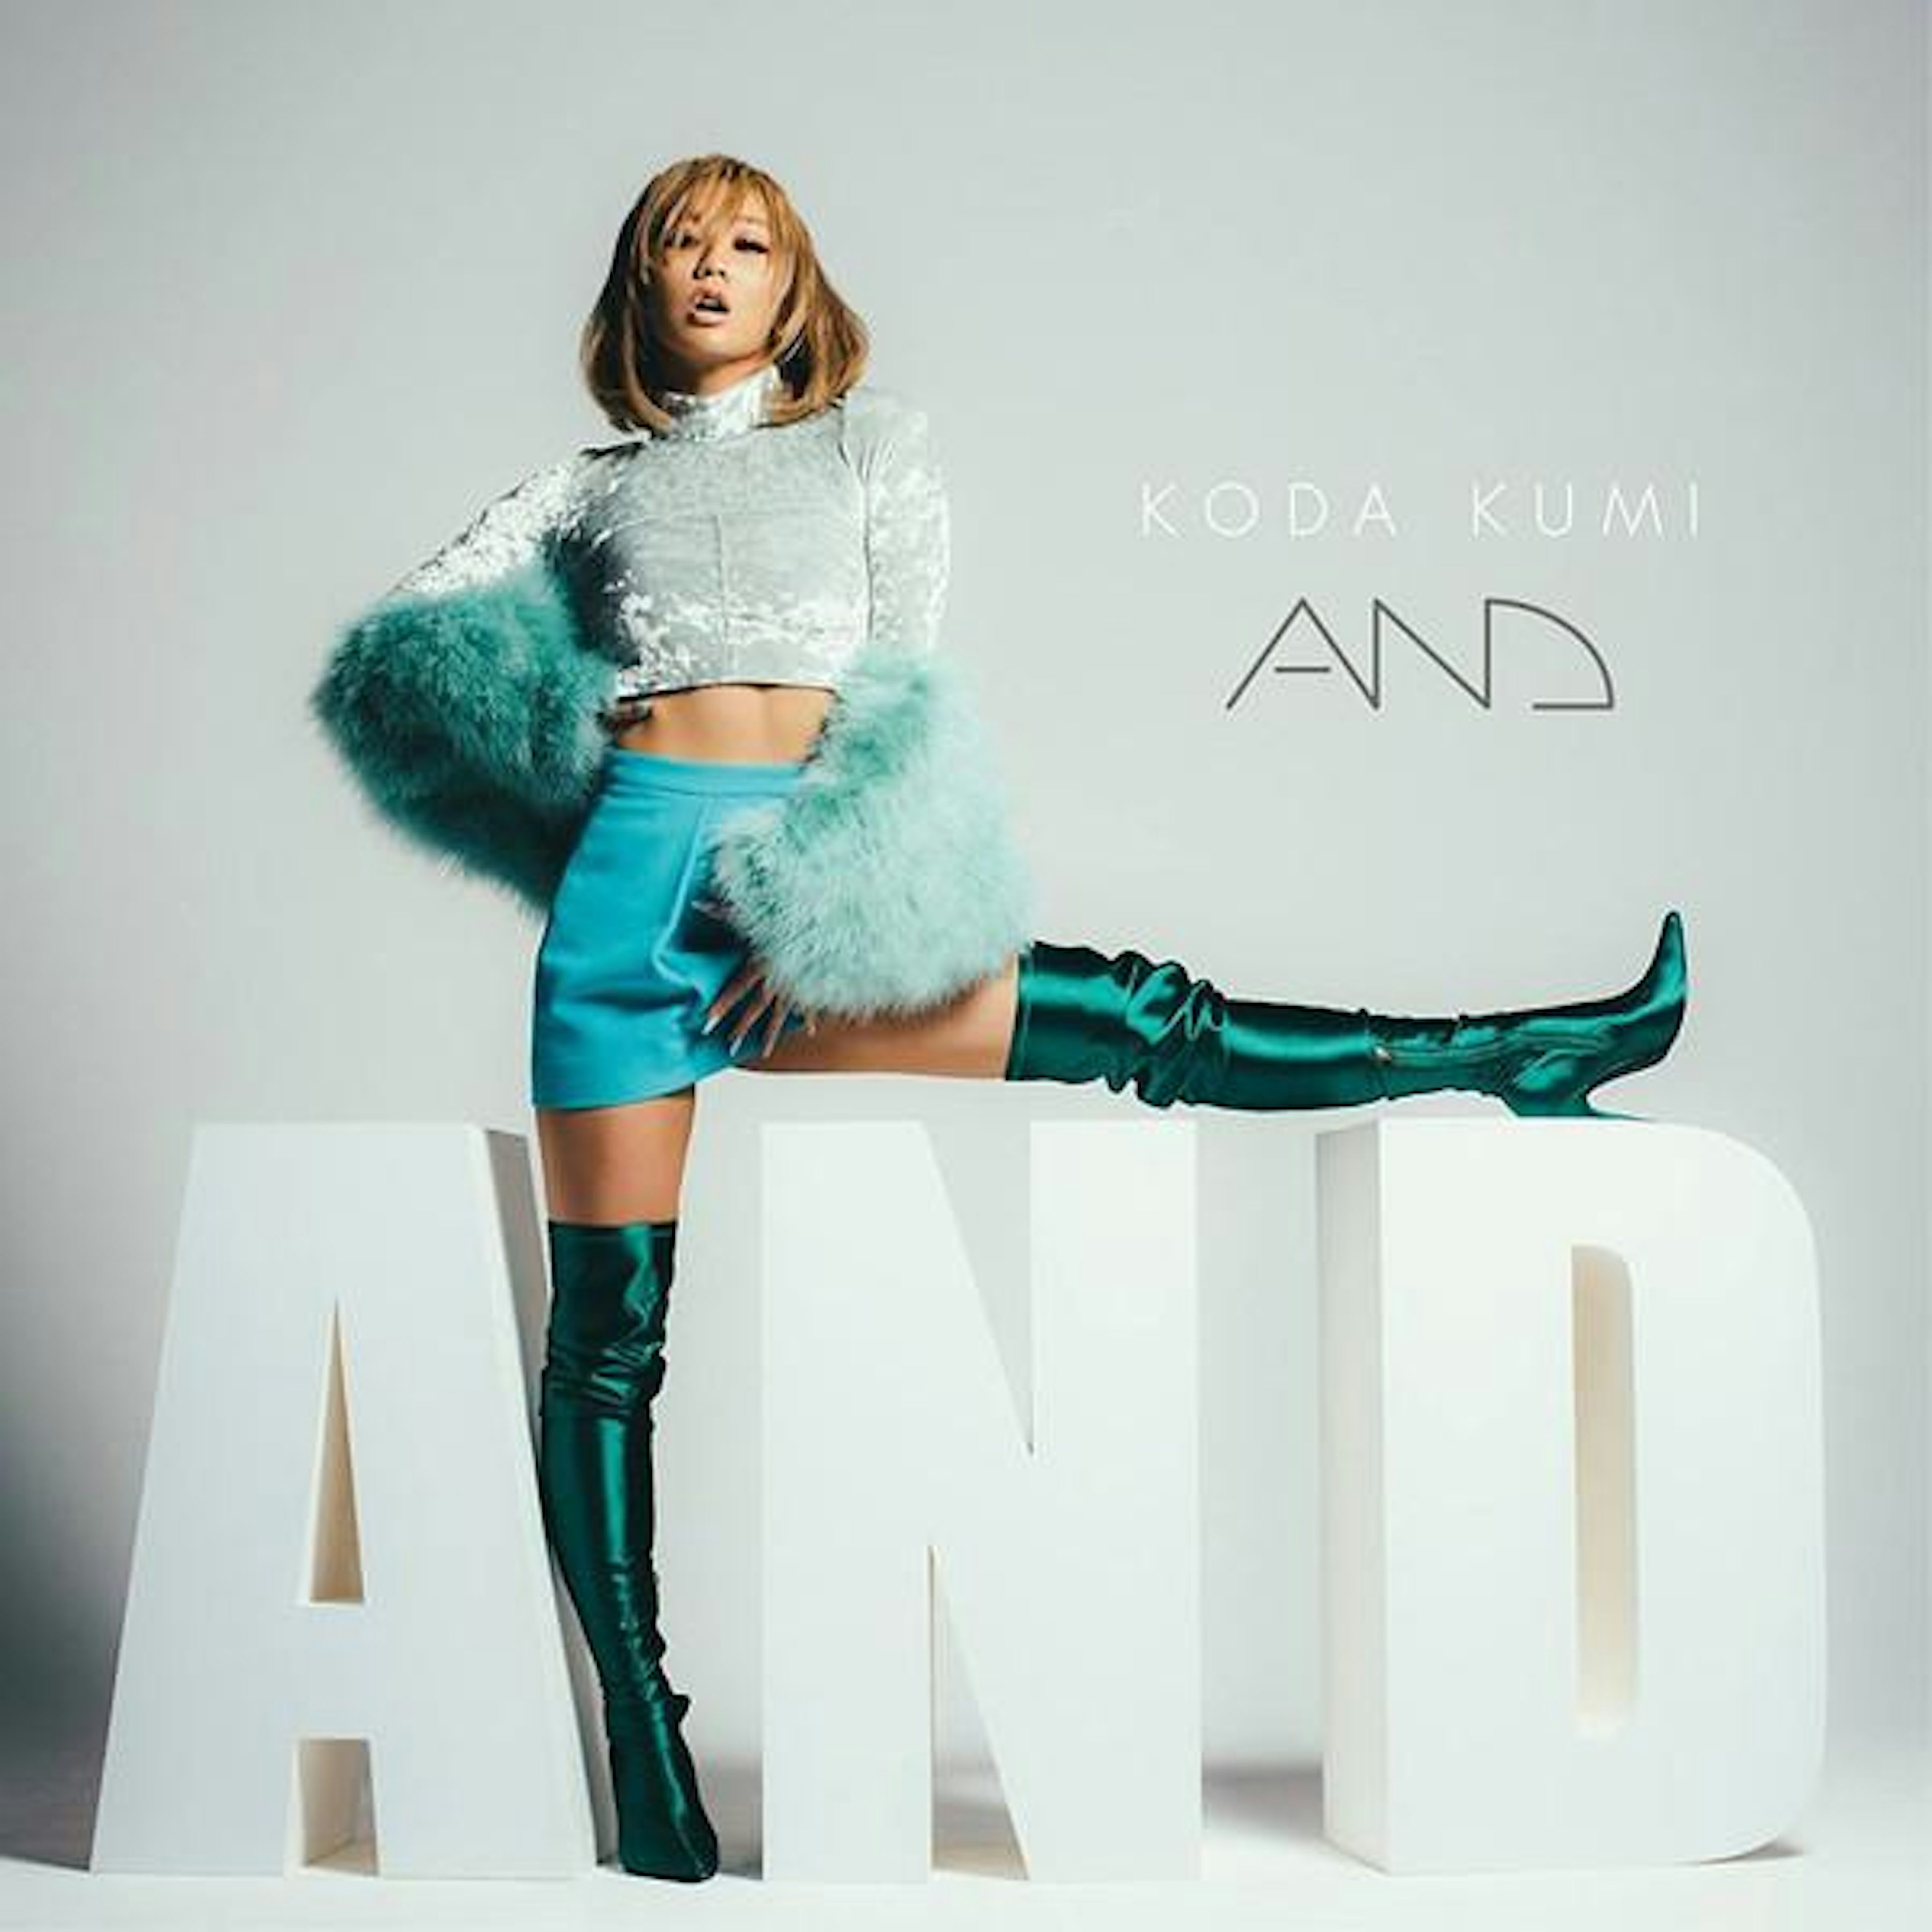 Kumi Koda AND CD